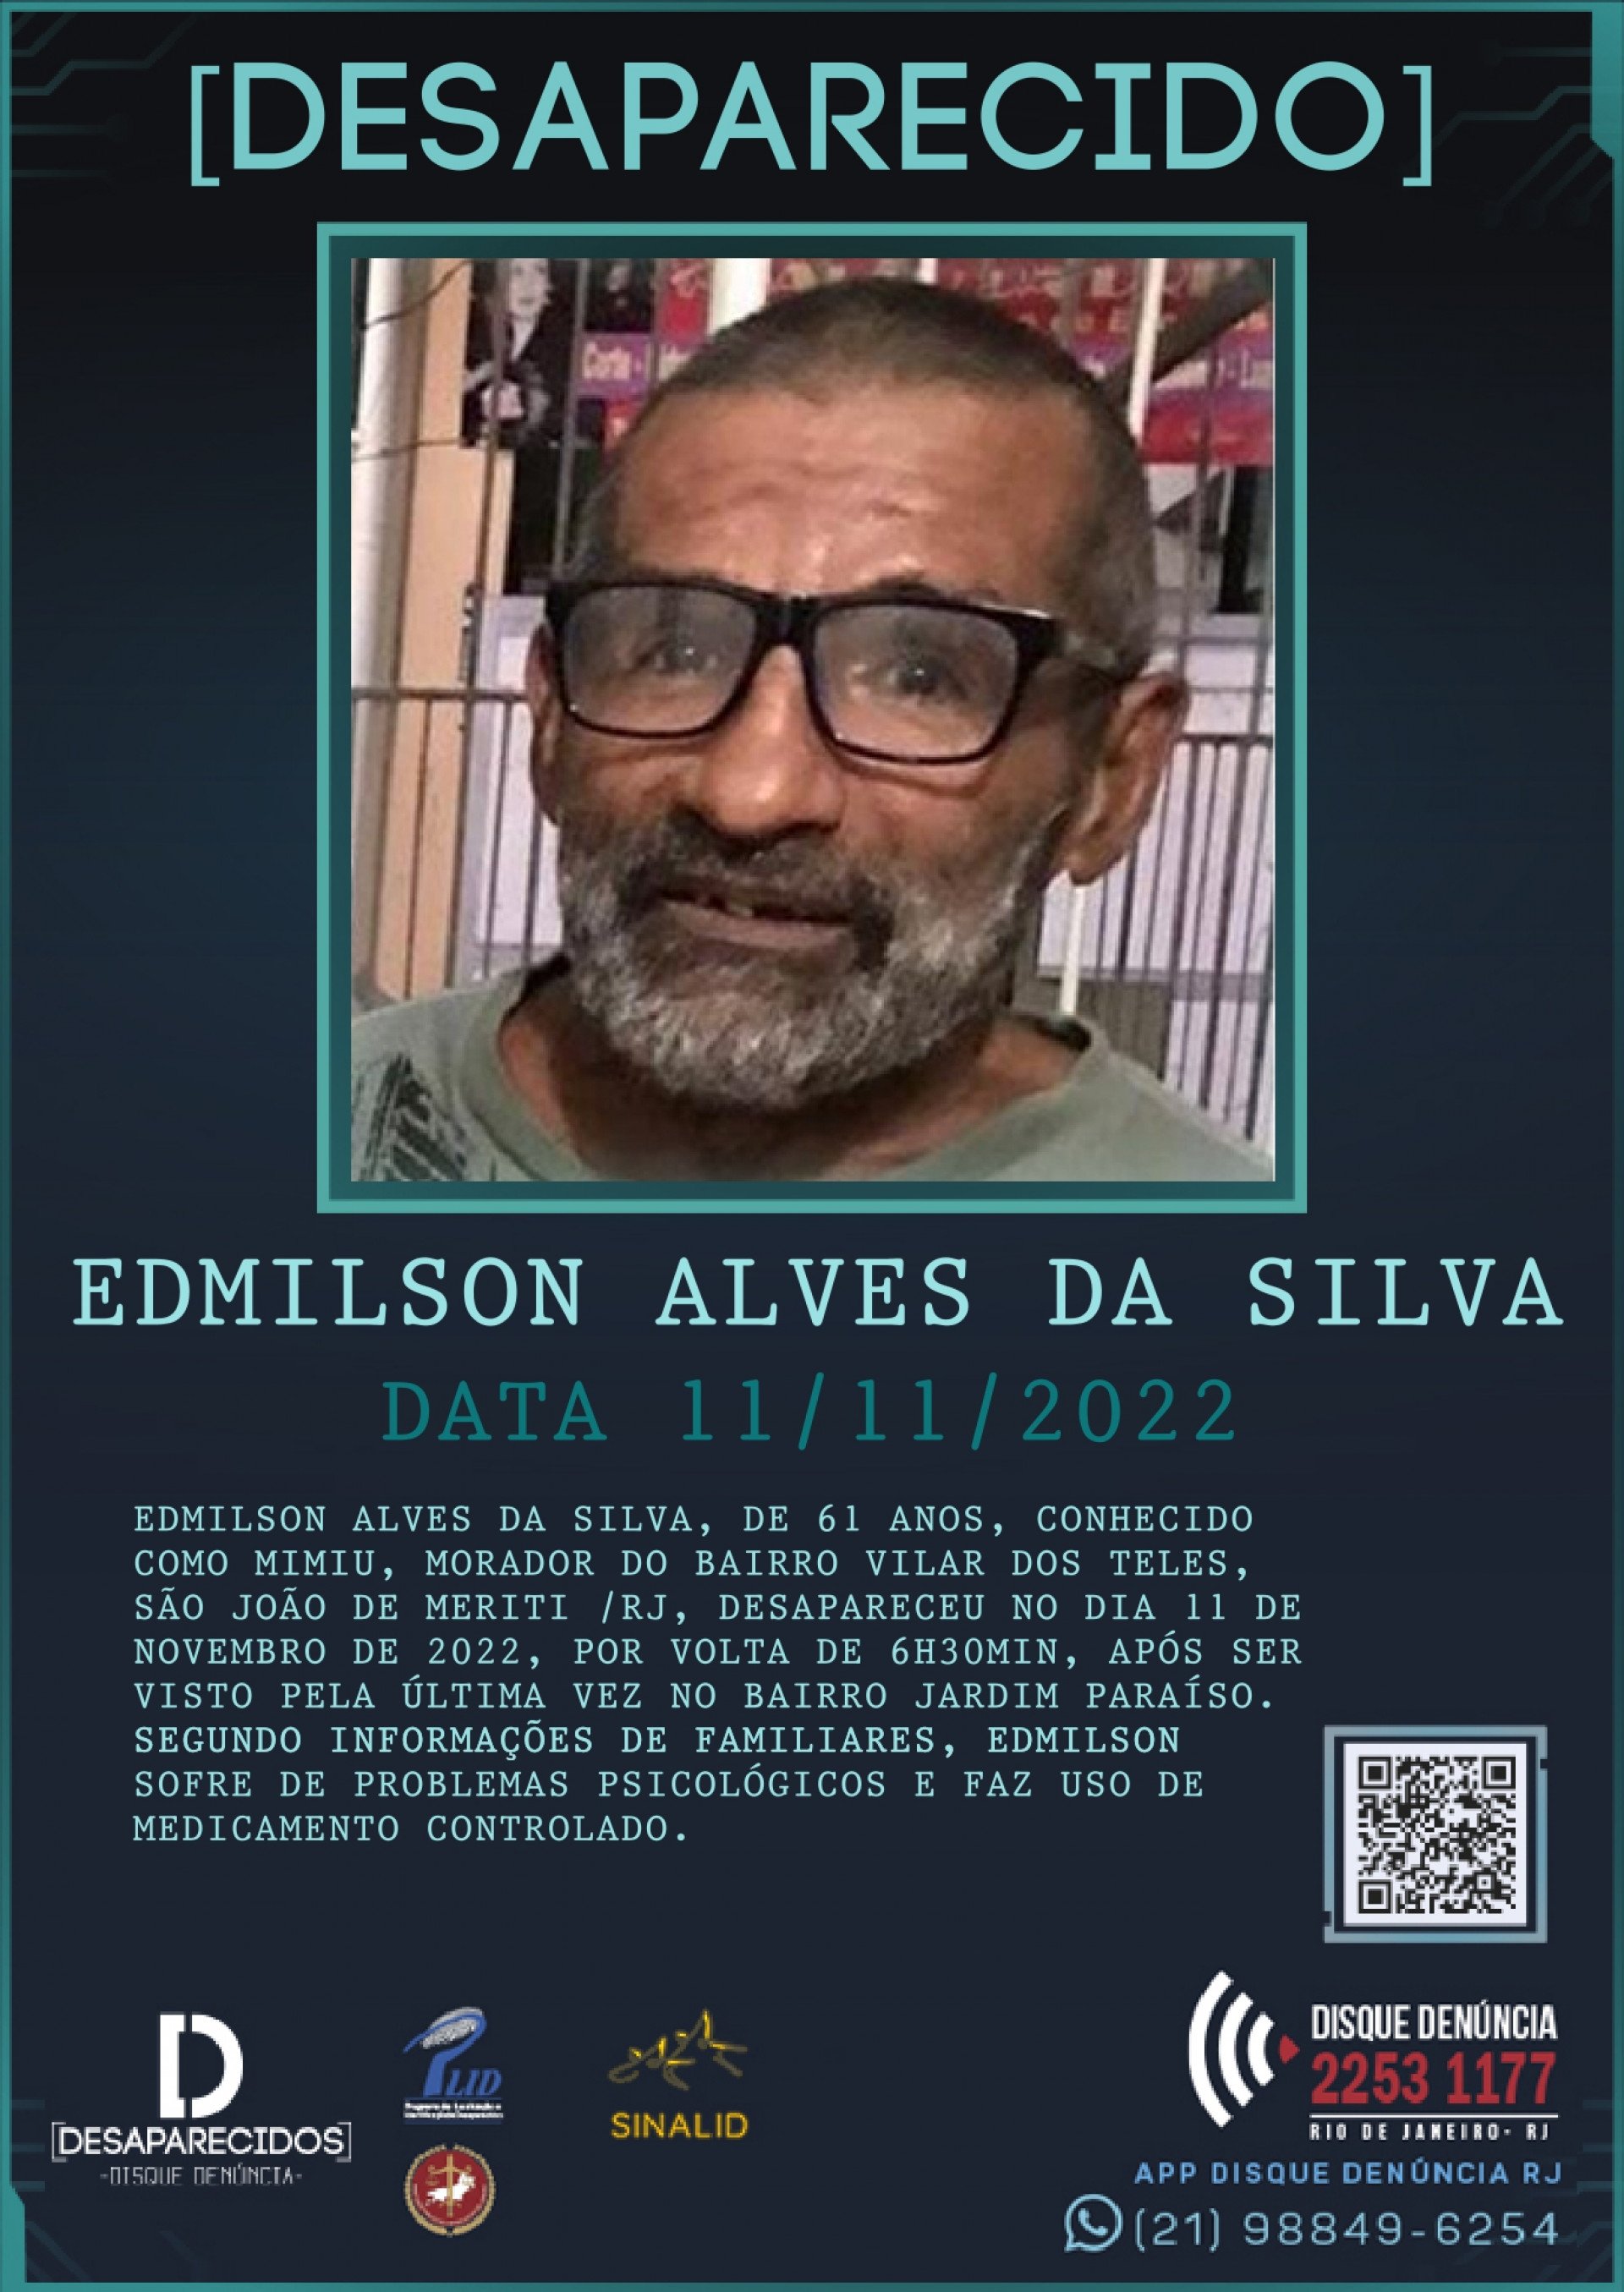 Edmilson Alves da Silva, de 61 anos, está desaparecido desde novembro de 2022, em São João de Meriti - Divulgação